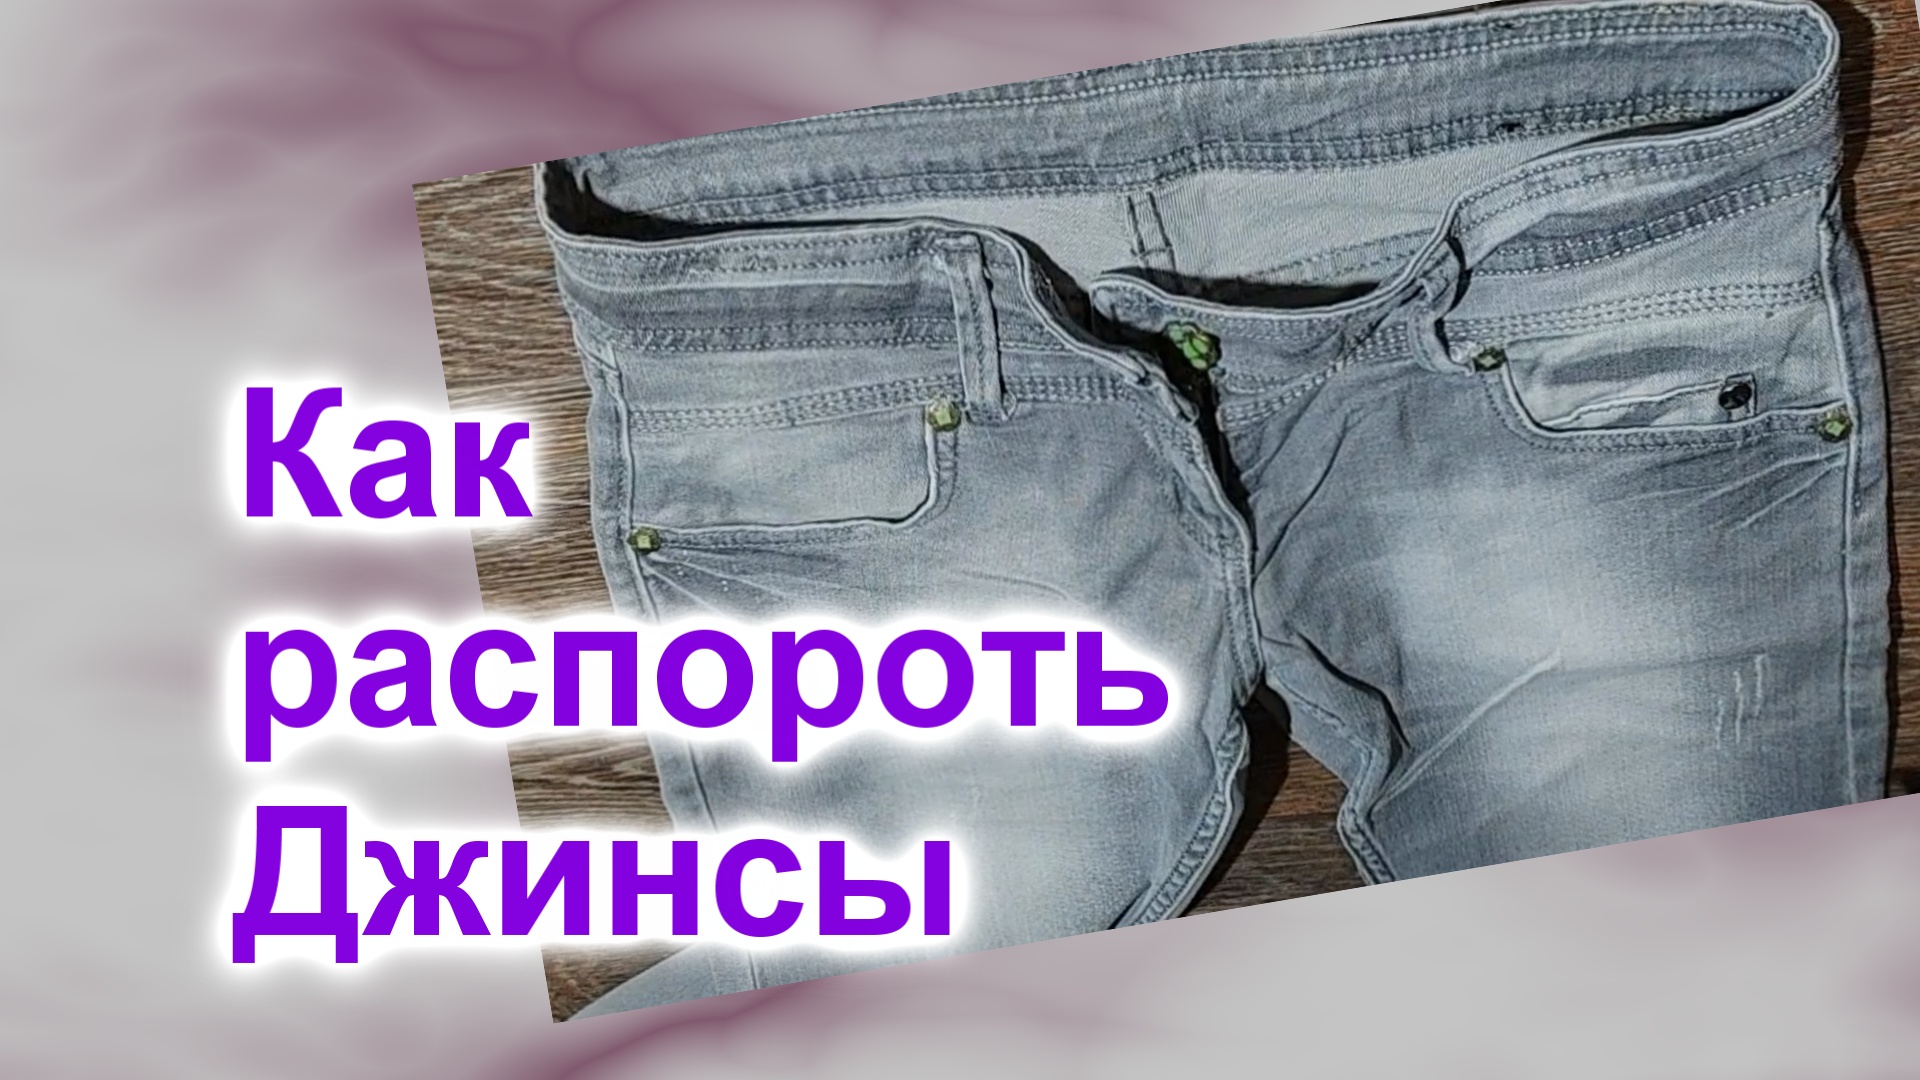 Как распороть джинсы (81)/Быстро и чисто/Сортировка обрезков